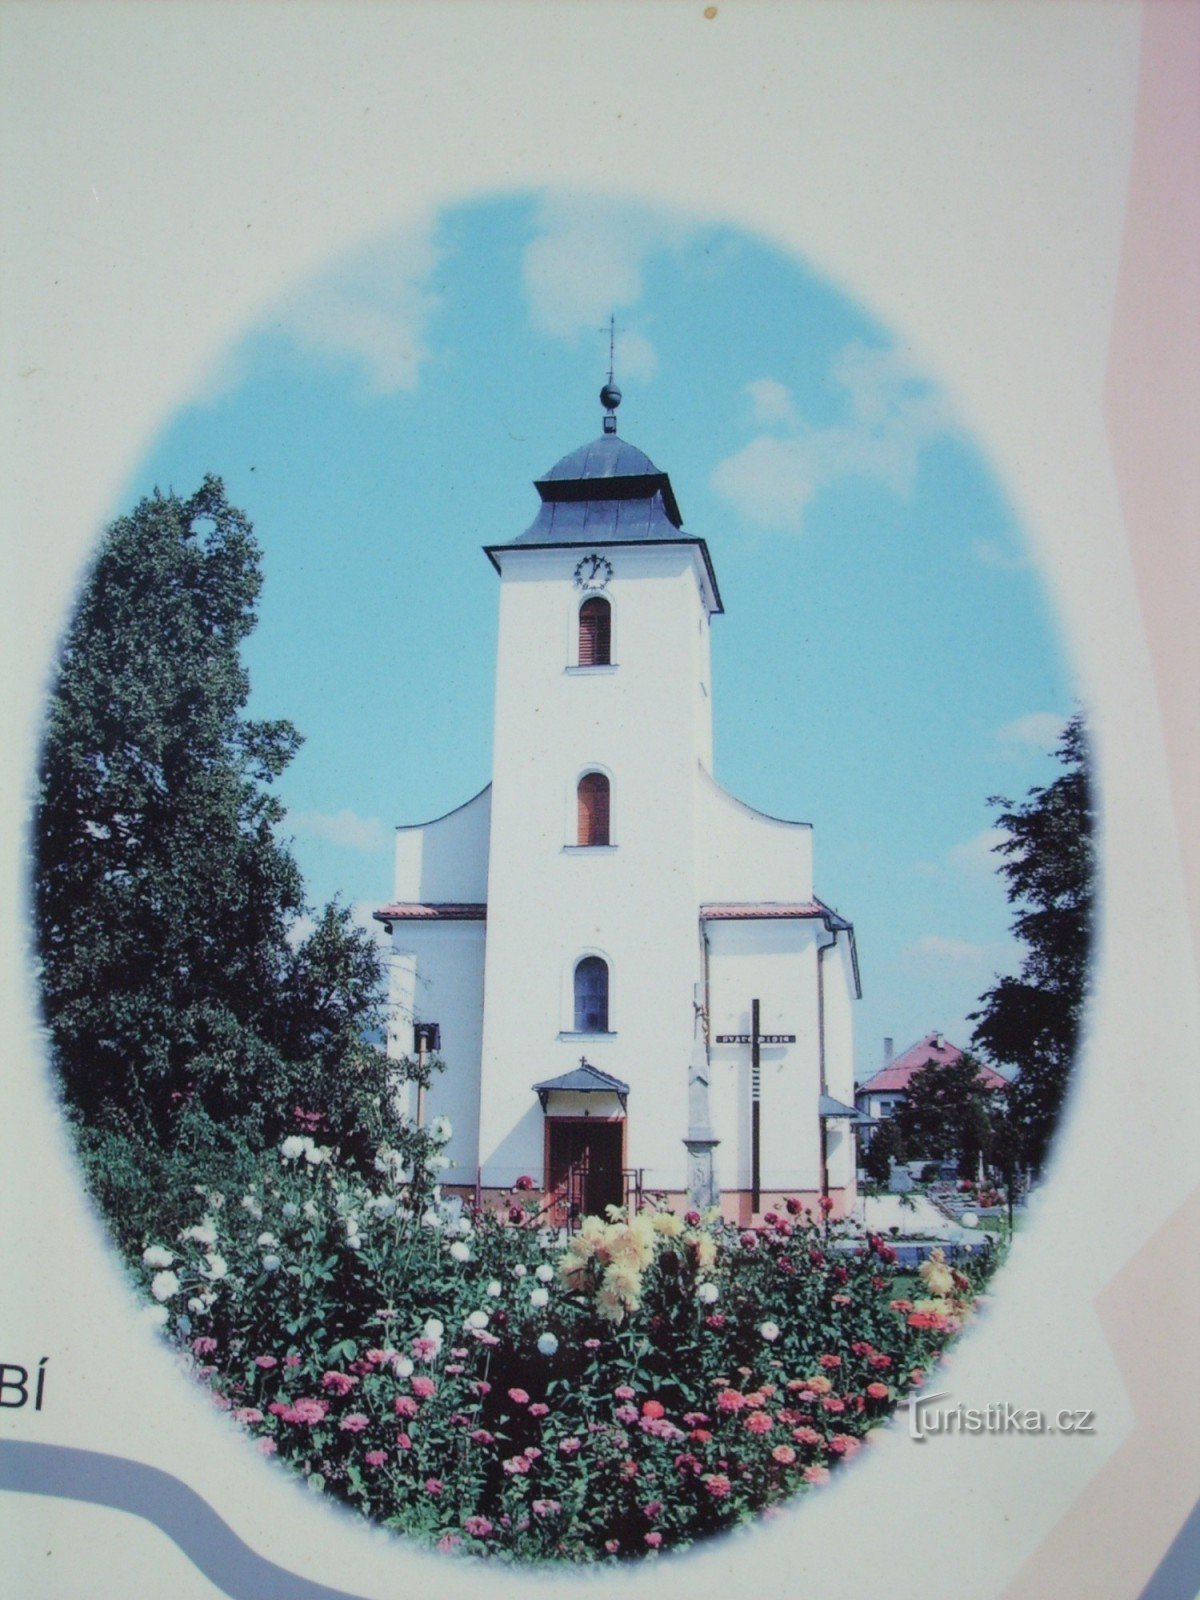 lokalna cerkev